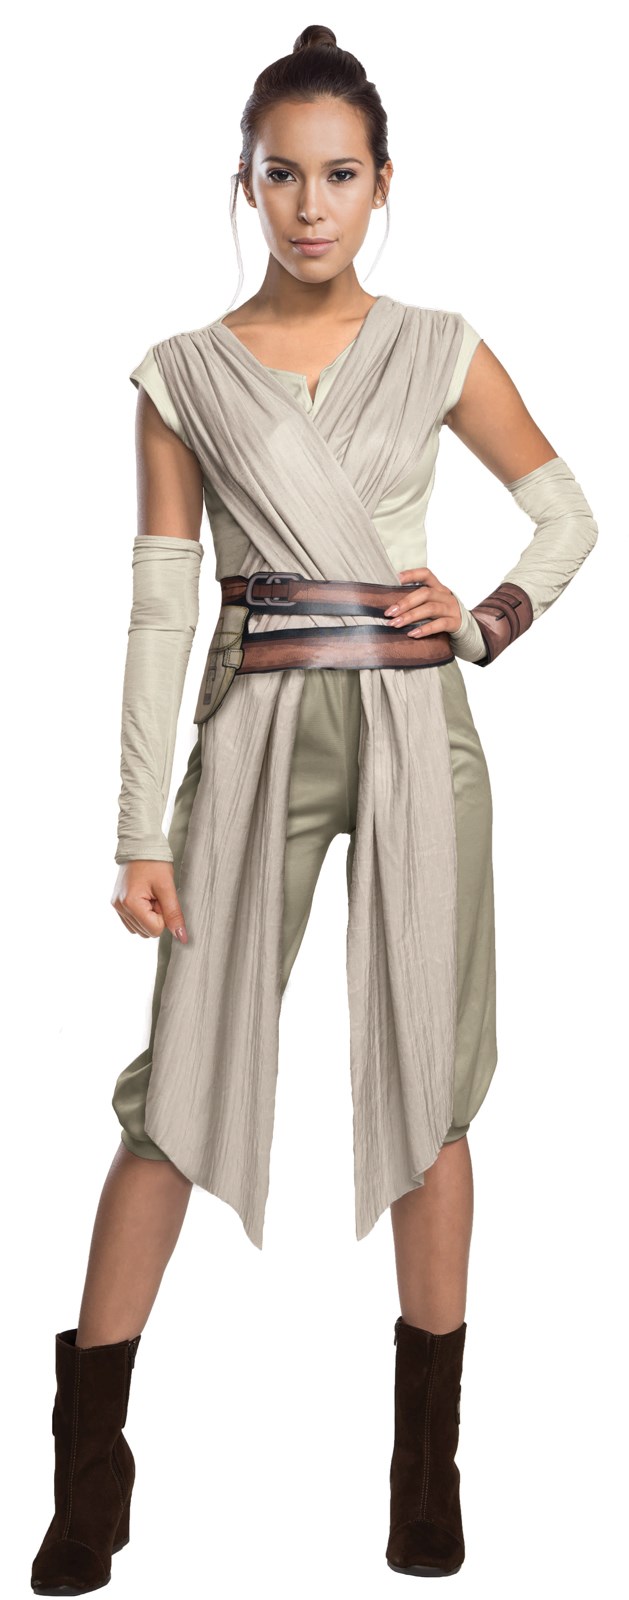 Star Wars Episode 7 – Womens Deluxe Rey Costume